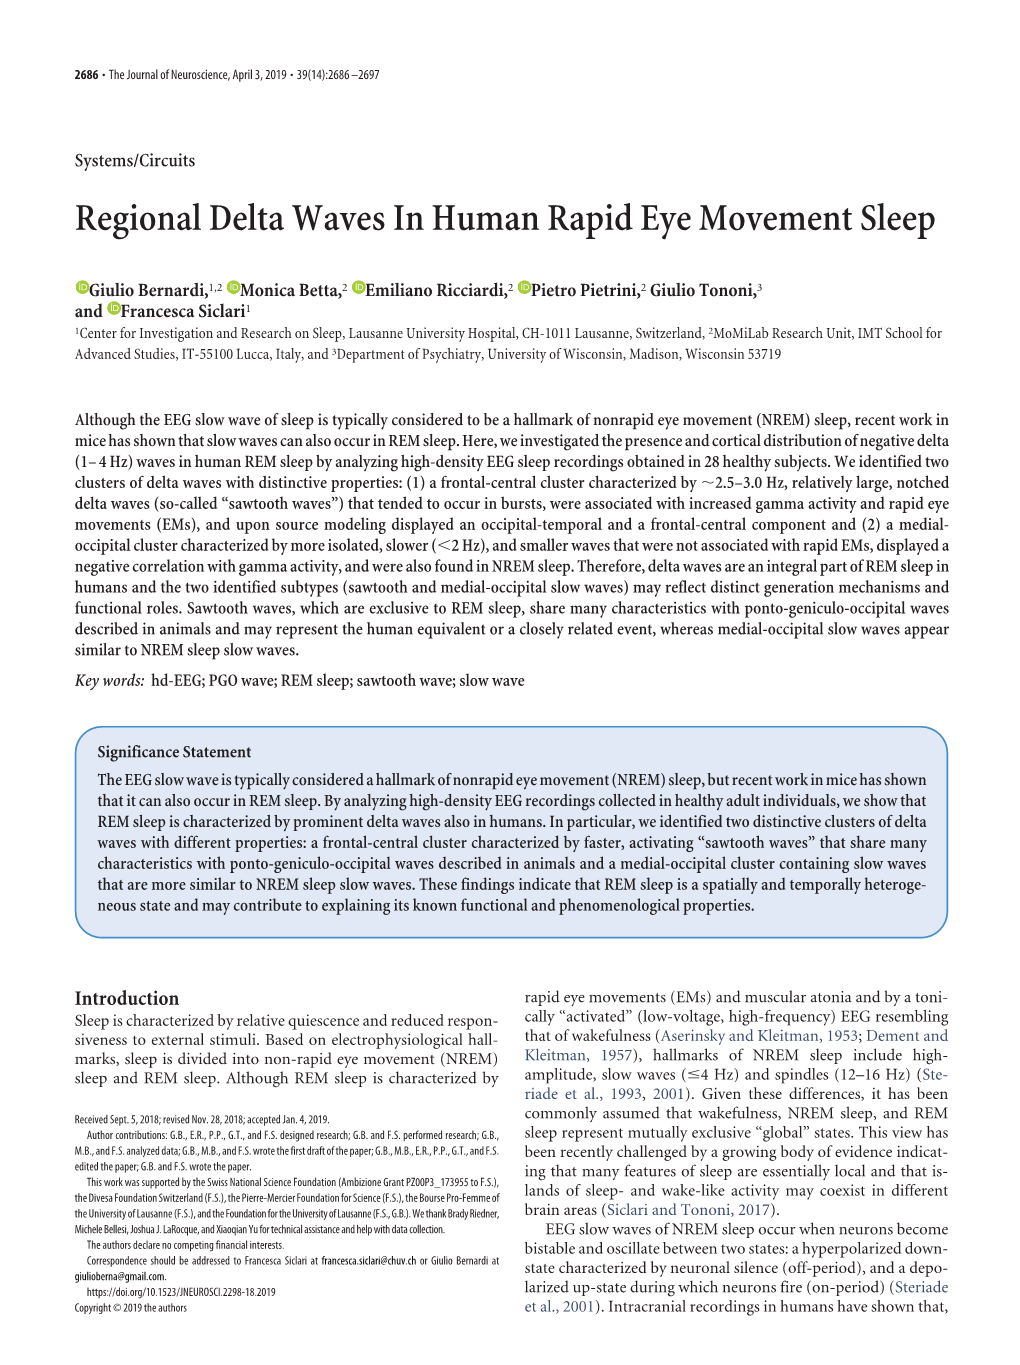 Regional Delta Waves in Human Rapid Eye Movement Sleep